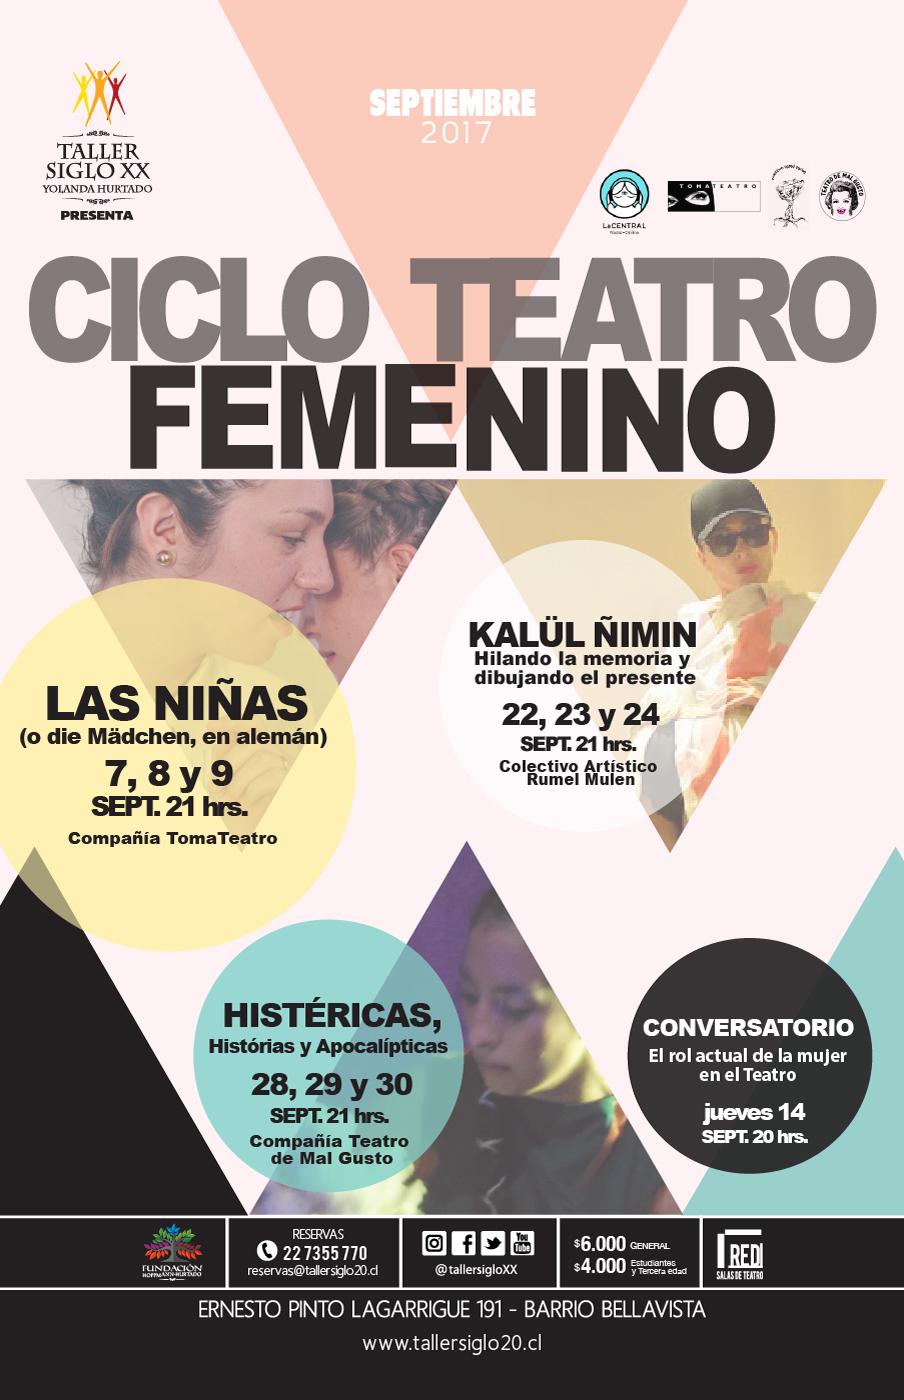 Ciclo de Teatro Femenino